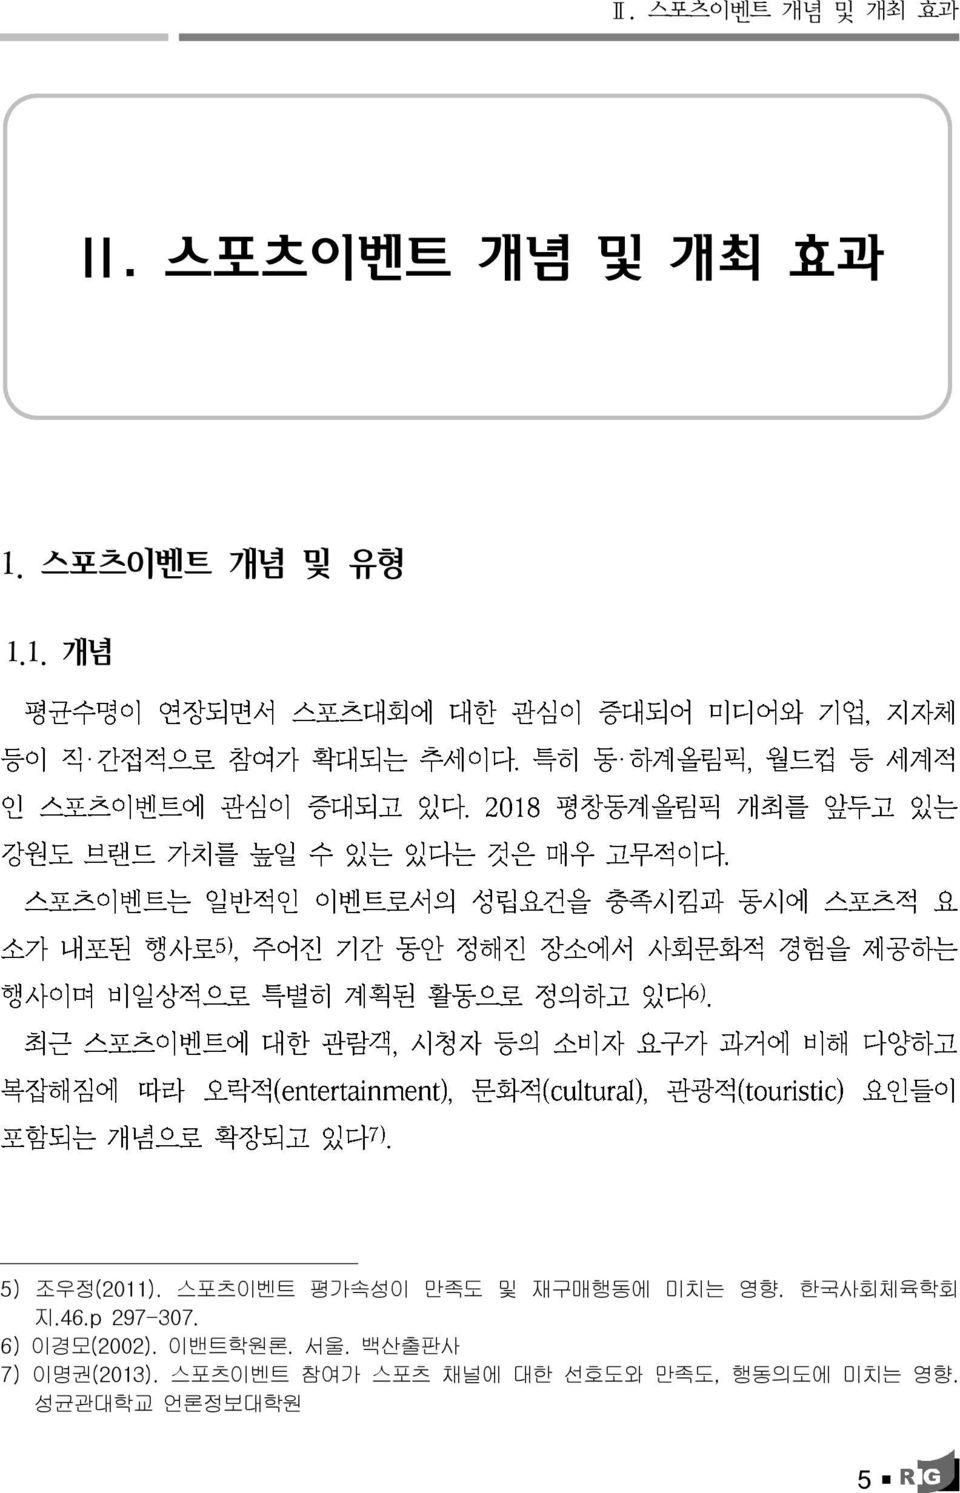 한국사회체육학회 지.46.p 297-307. 6) 이경모 (2002). 이밴트학원론. 서울.